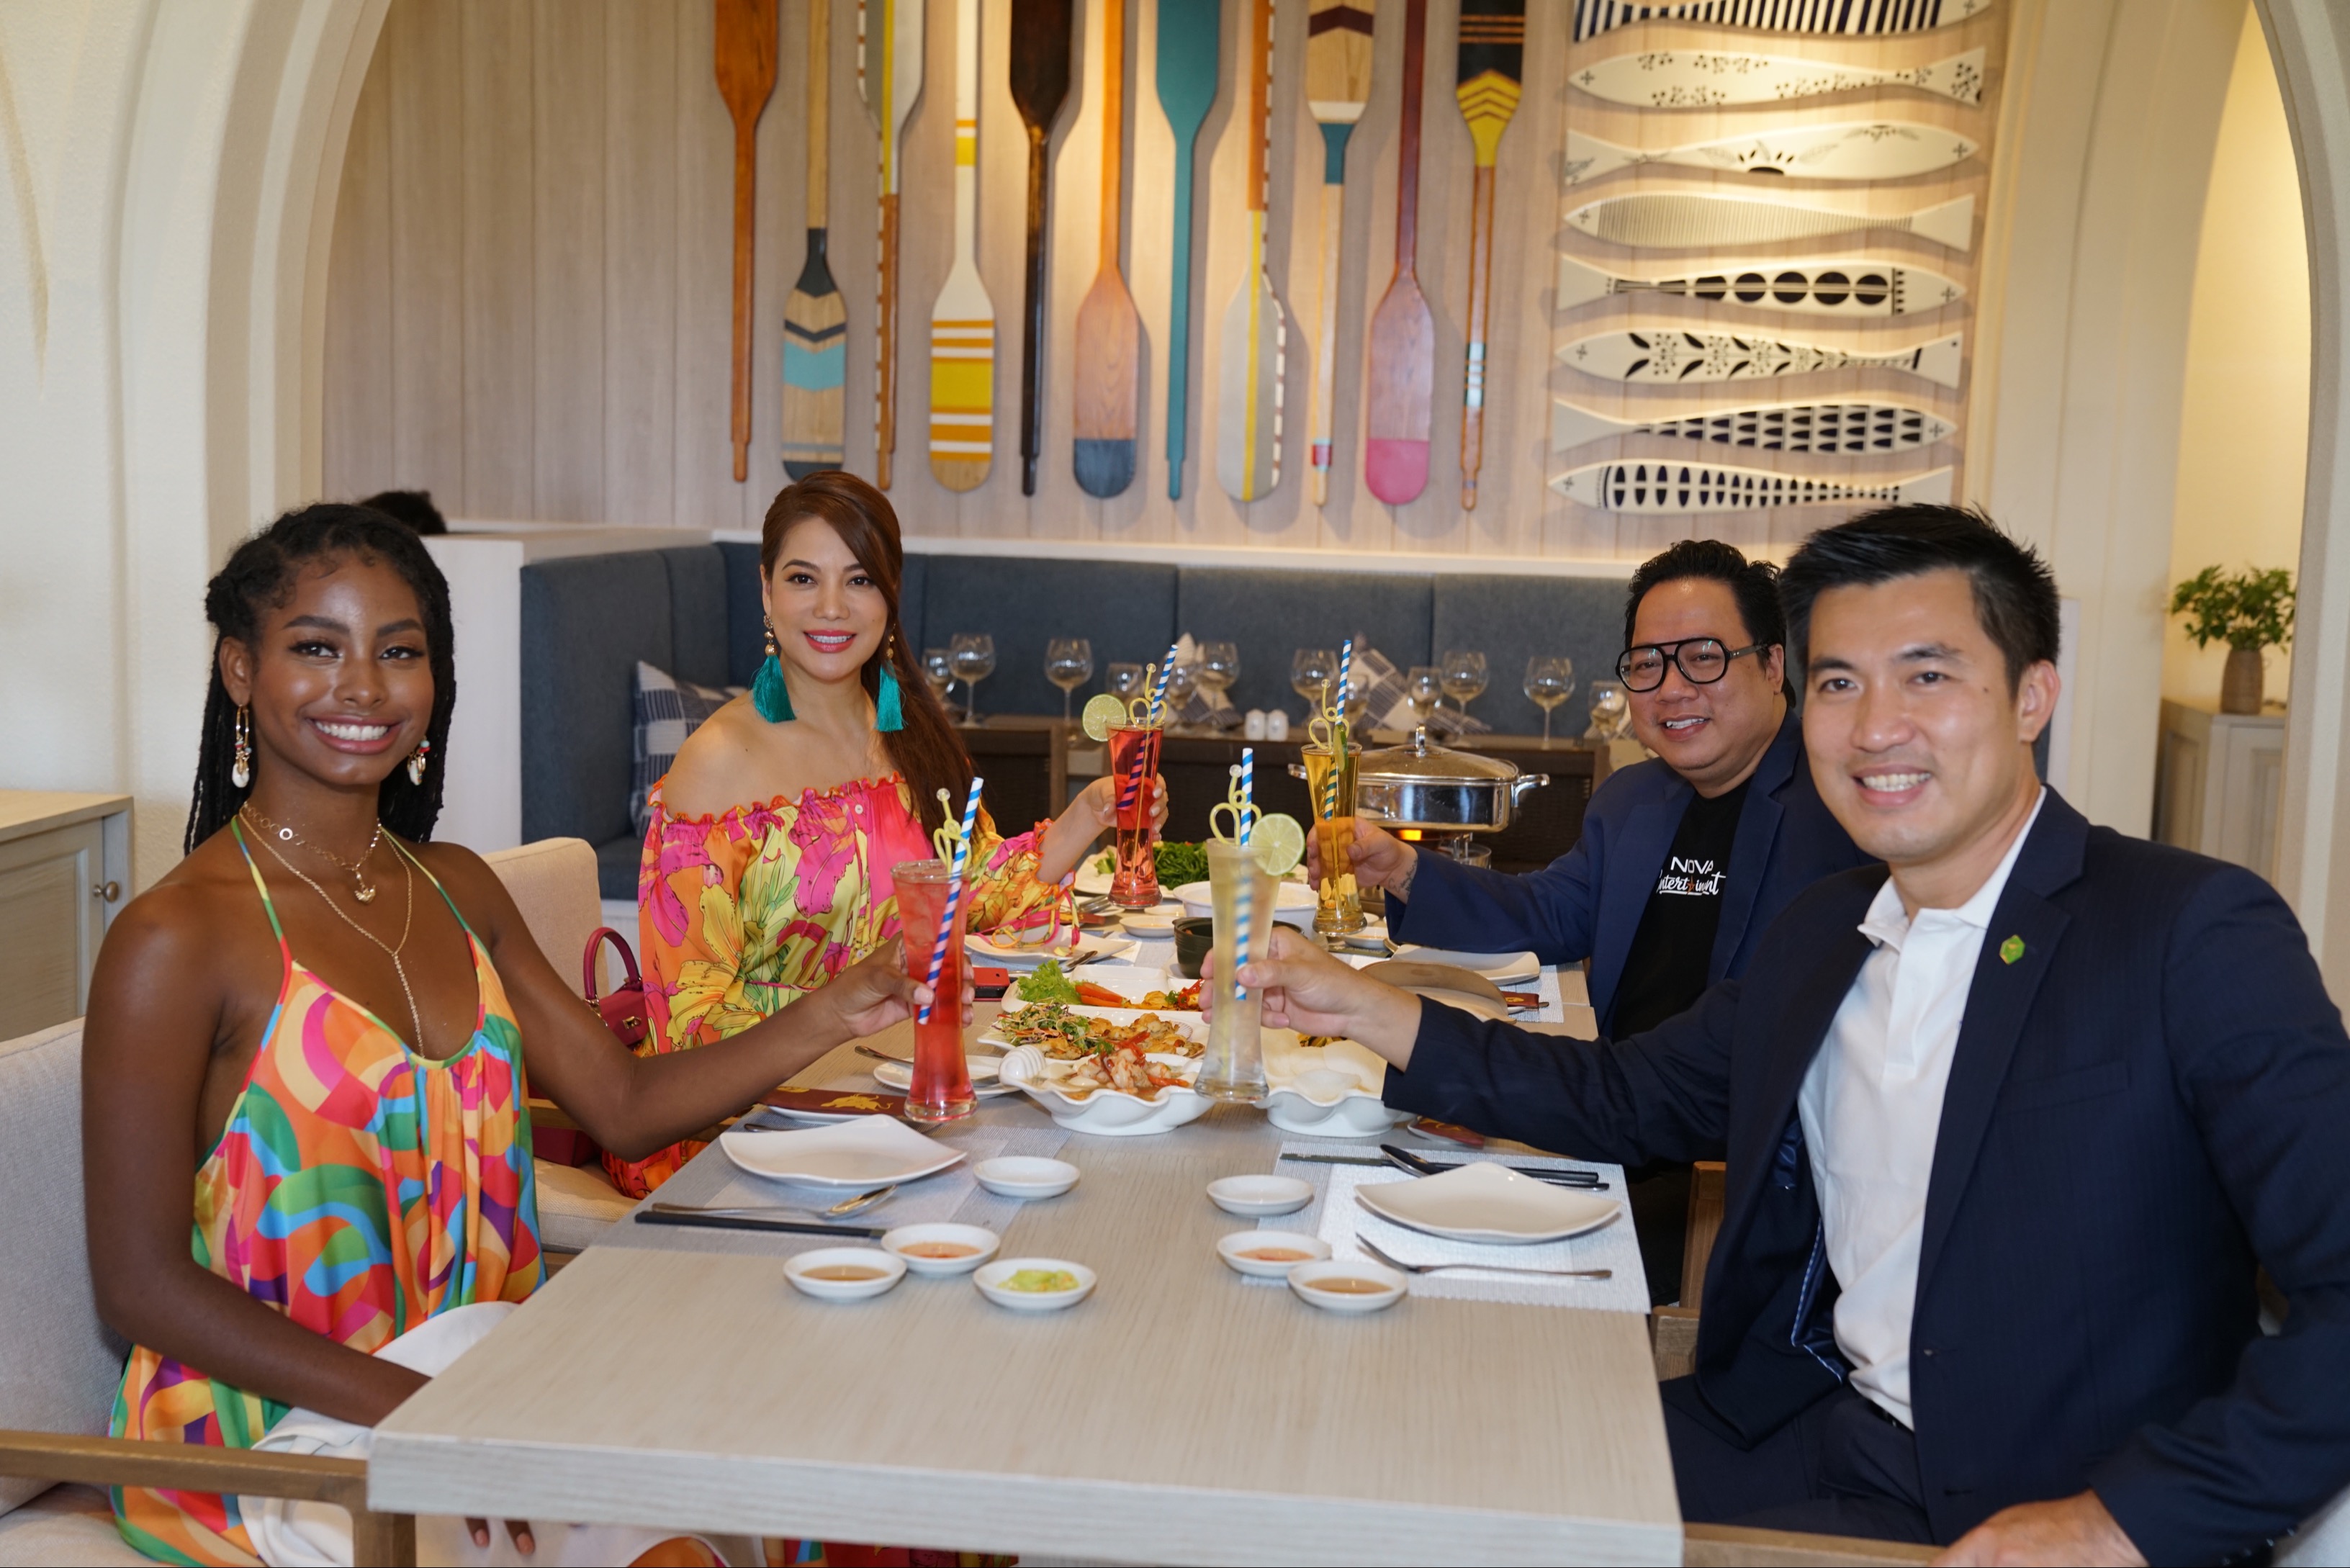 Hoa hậu Destiny, Trương Ngọc Ánh, Tùng Leo thưởng thức bữa trưa trong không gian nhà hàng Marina Club, và thích thú với hải sản tươi được chế biến tại chỗ và nhiều món đặc trưng ẩm thực địa phương.